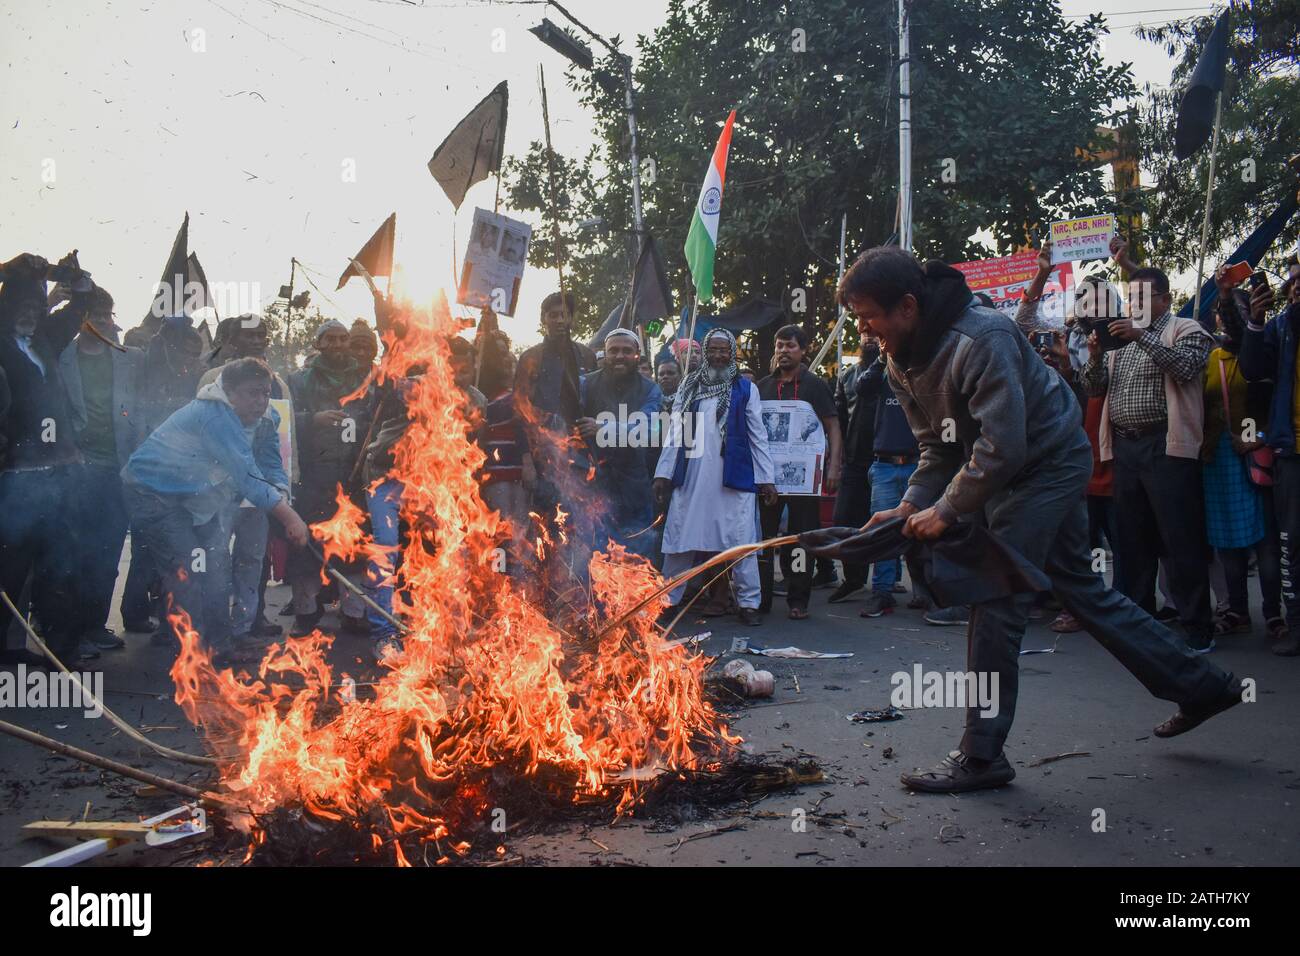 Suci-Aktivisten aus Indien riefen Slogans aus, während sie während einer Protestkundgebung gegen den NRC in Kolkata, Indien, einen Effigy verbrennen. Stockfoto